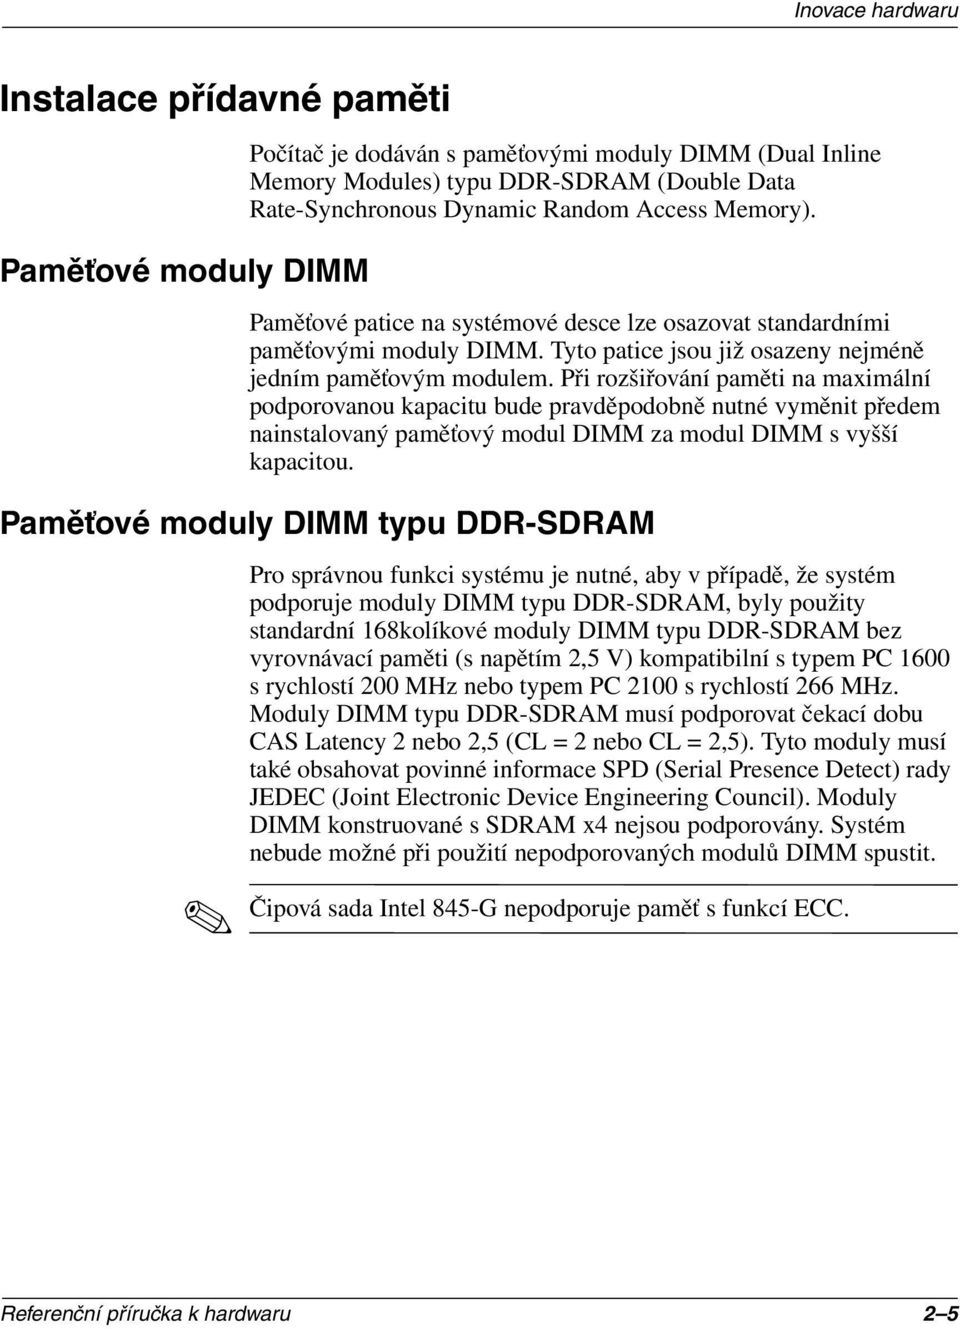 Při rozšiřování paměti na maximální podporovanou kapacitu bude pravděpodobně nutné vyměnit předem nainstalovaný paměťový modul DIMM za modul DIMM s vyšší kapacitou.